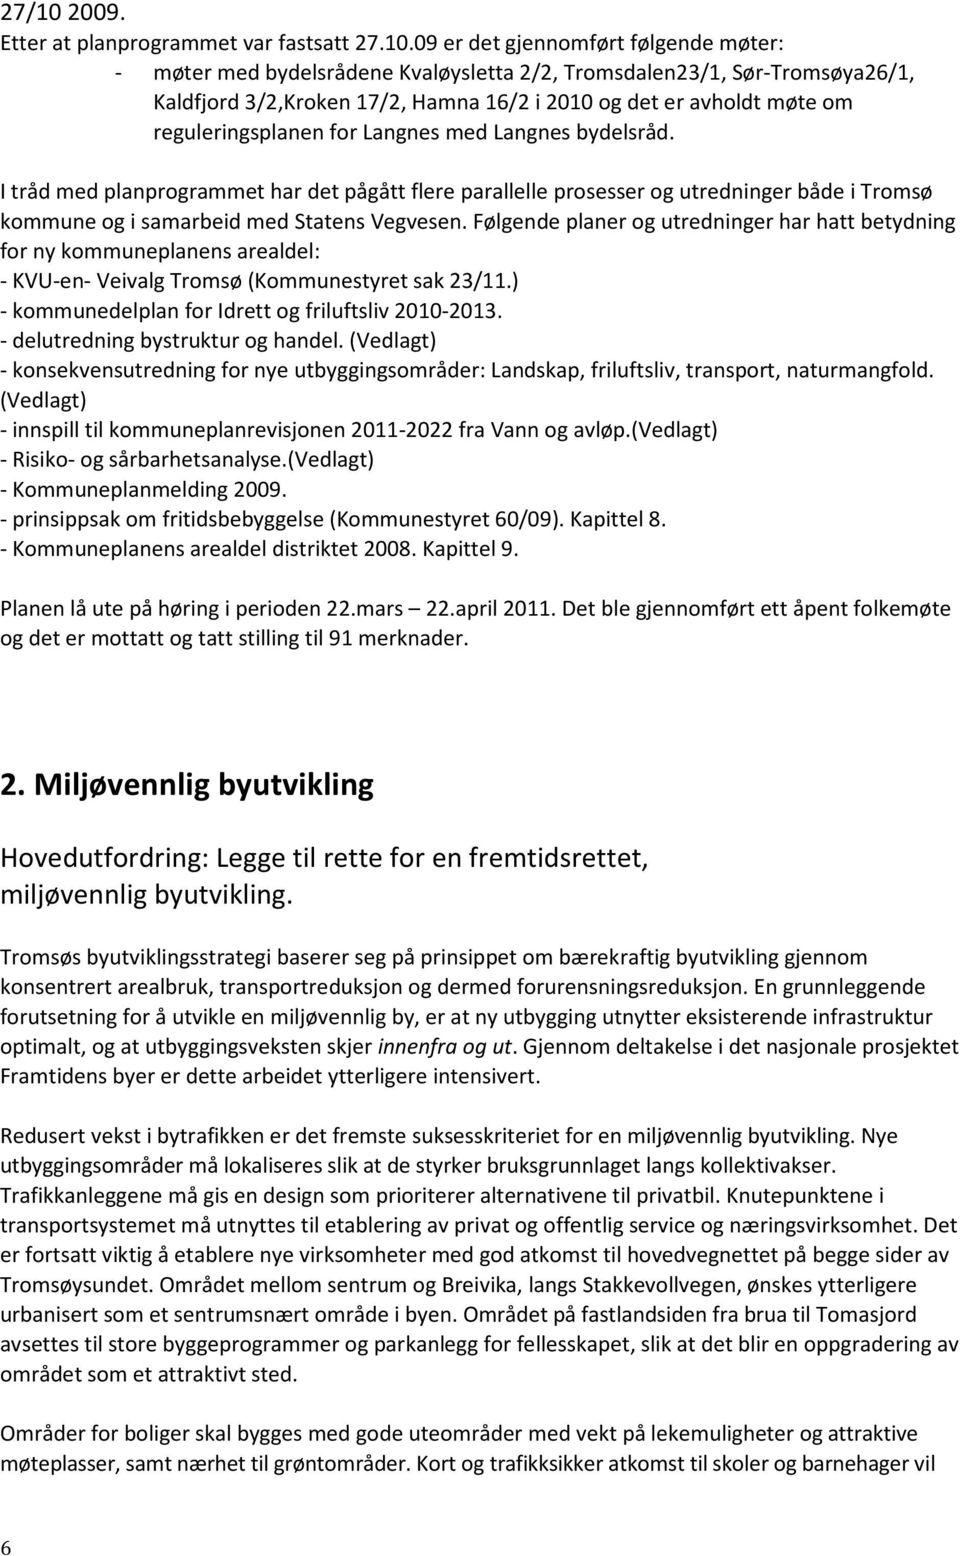 09 er det gjennomført følgende møter: - møter med bydelsrådene Kvaløysletta 2/2, Tromsdalen23/1, Sør-Tromsøya26/1, Kaldfjord 3/2,Kroken 17/2, Hamna 16/2 i 2010 og det er avholdt møte om